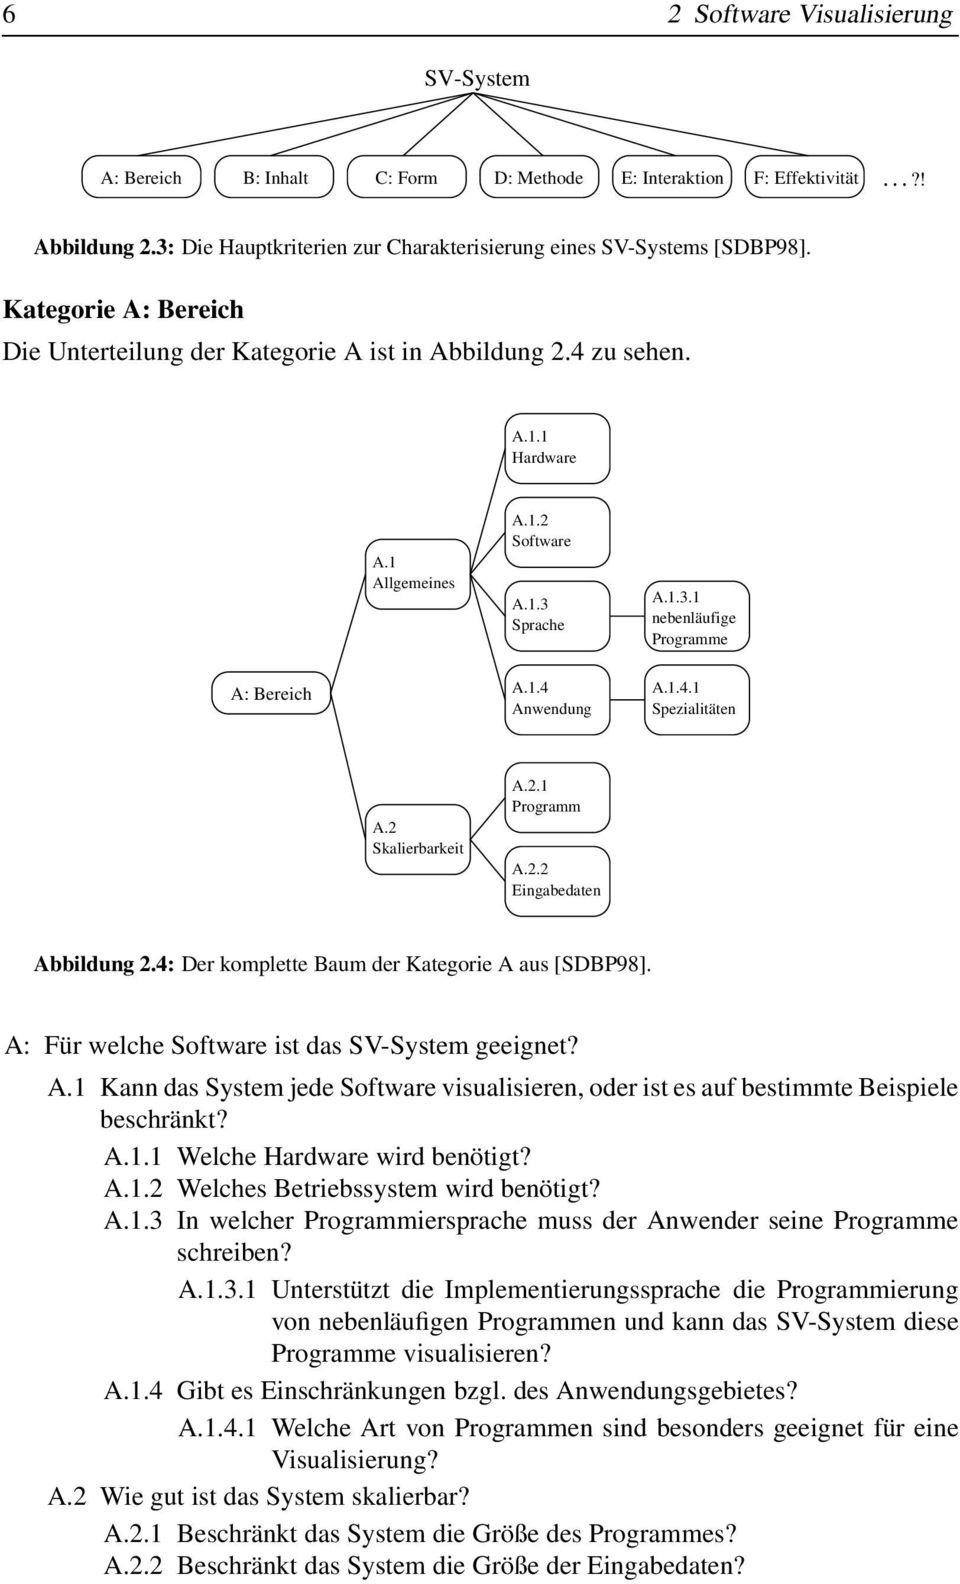 1.4.1 Spezialitäten A.2 Skalierbarkeit A.2.1 Programm A.2.2 Eingabedaten Abbildung 2.4: Der komplette Baum der Kategorie A aus [SDBP98]. A: Für welche Software ist das SV-System geeignet? A.1 Kann das System jede Software visualisieren, oder ist es auf bestimmte Beispiele beschränkt?